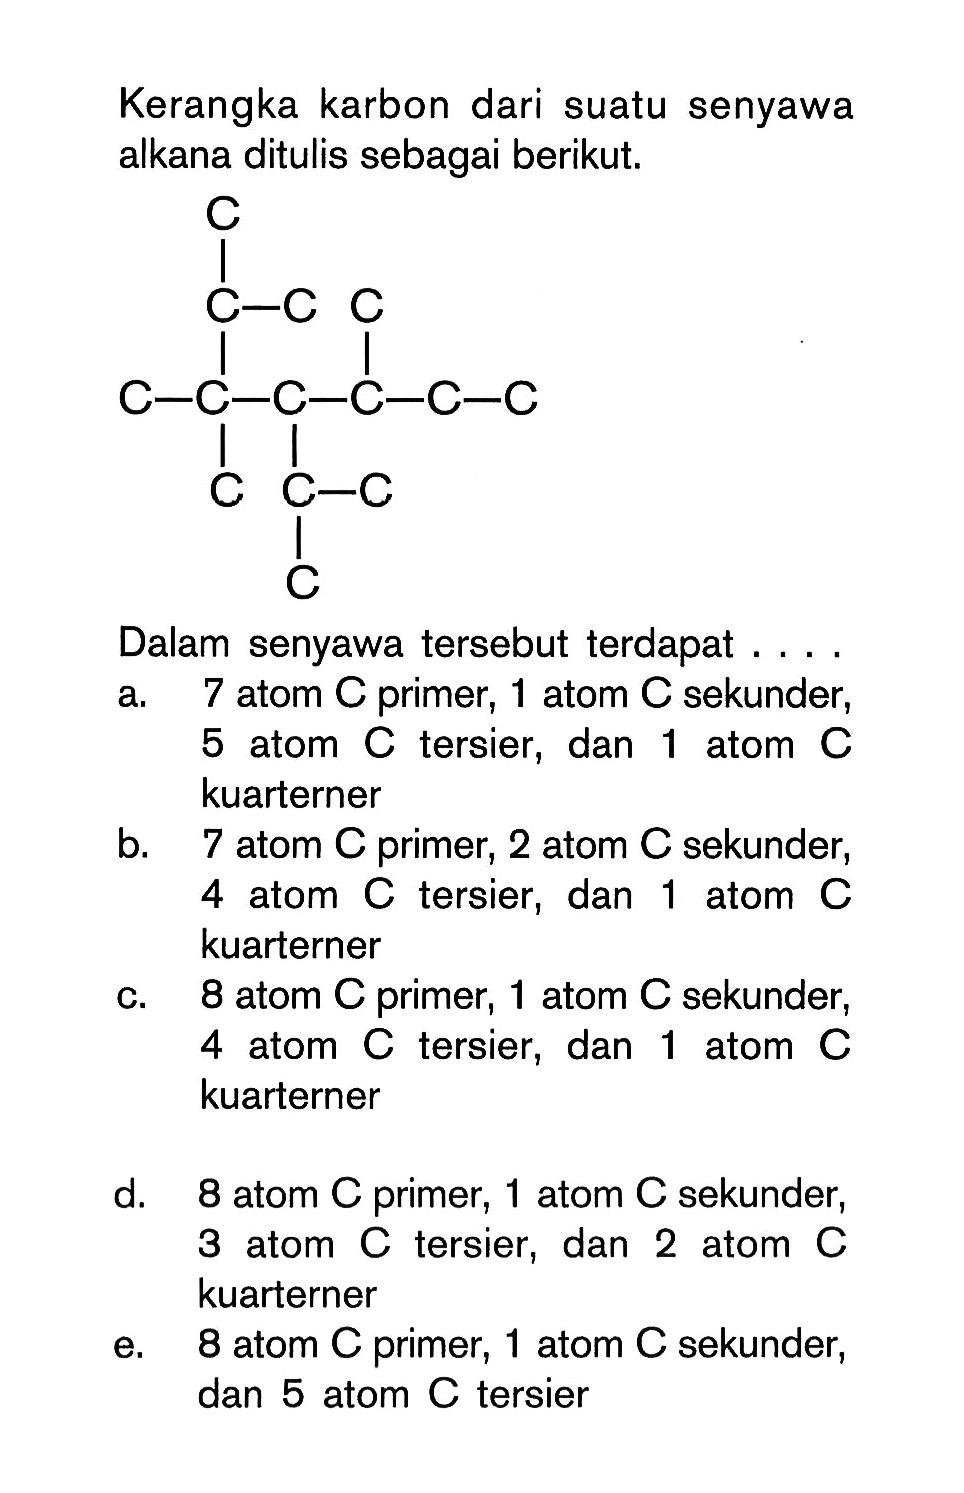 Kerangka karbon dari suatu senyawa alkana ditulis sebagai berikut: C C-C-C C-C-C-C-C-C C C-C C Dalam senyawa tersebut terdapat .....